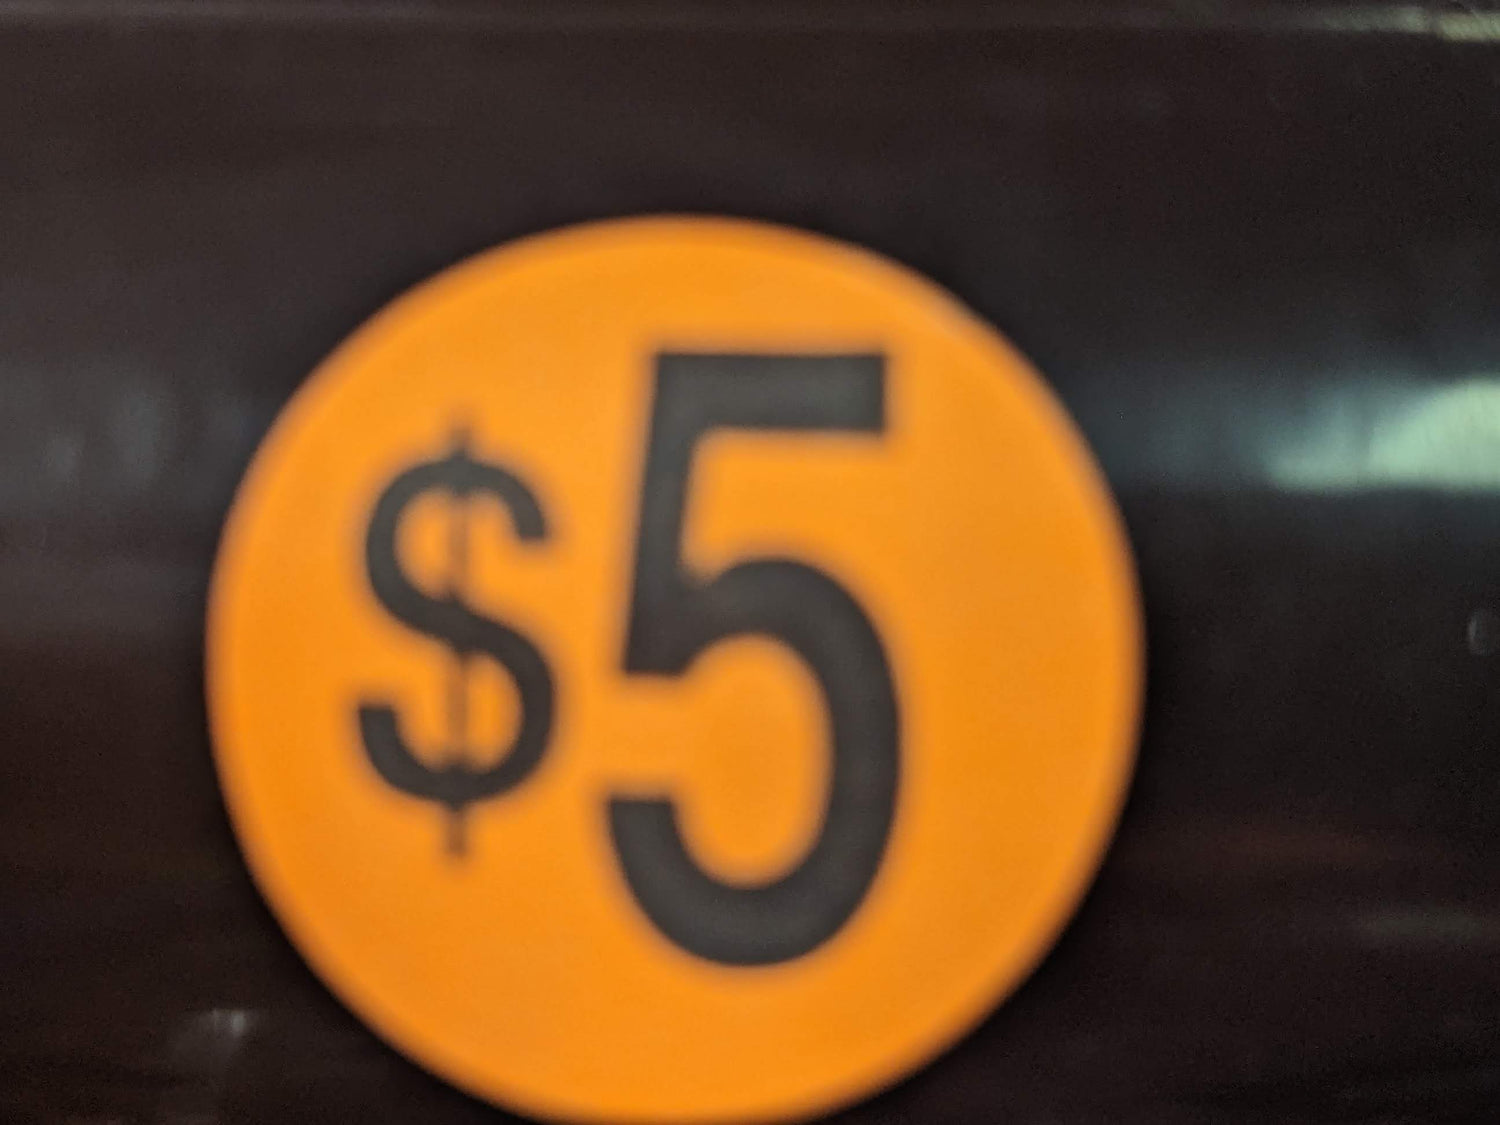 $5